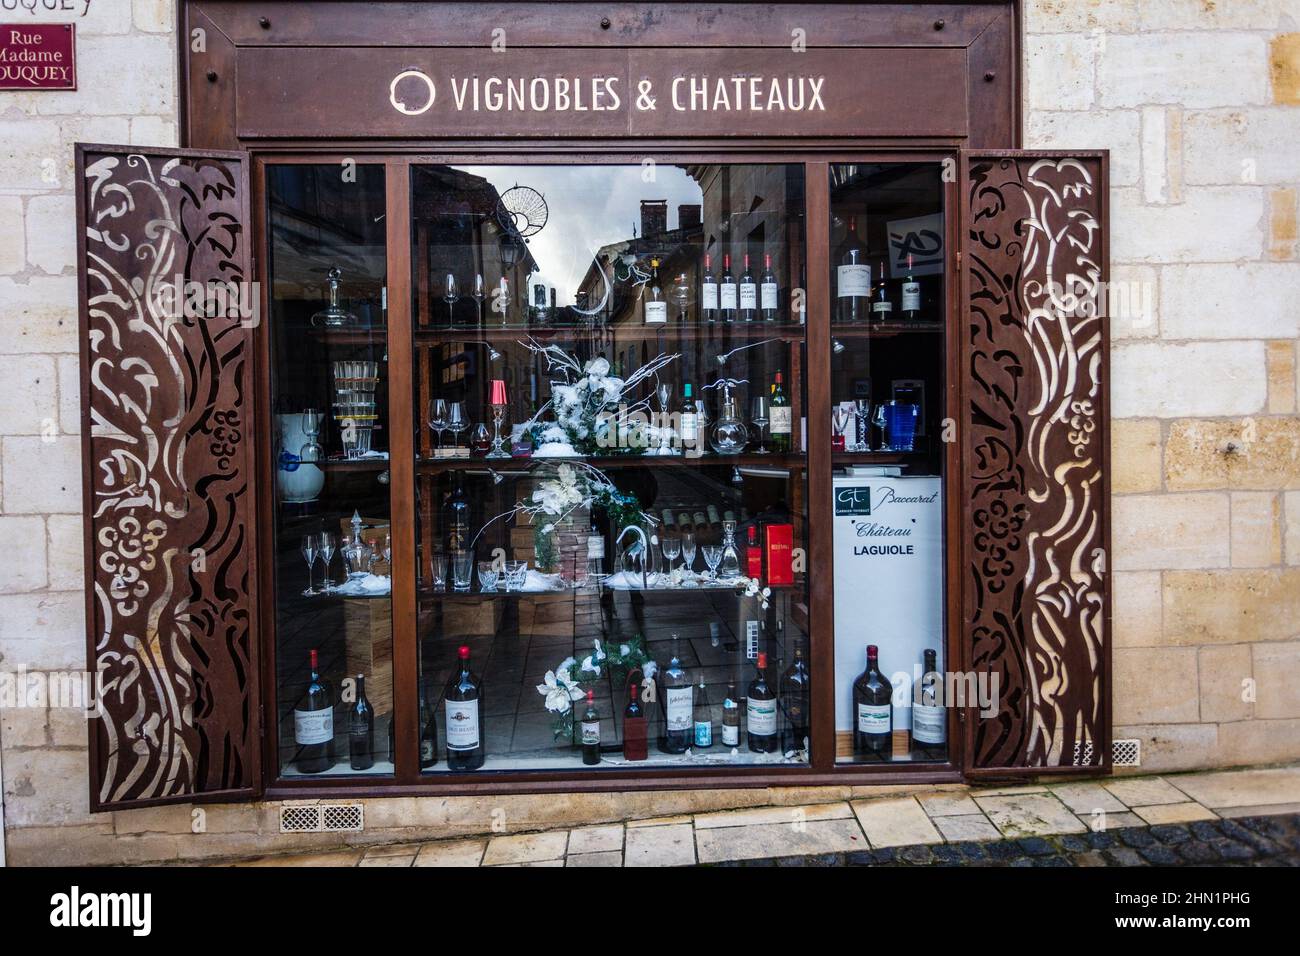 Weinhandlung im Dorf Saint Emillion, einem Dorf, das von Weinbergen umgeben ist. Hier werden einige der besten Weine der Region Bordeaux produziert. Frankreich. Stockfoto